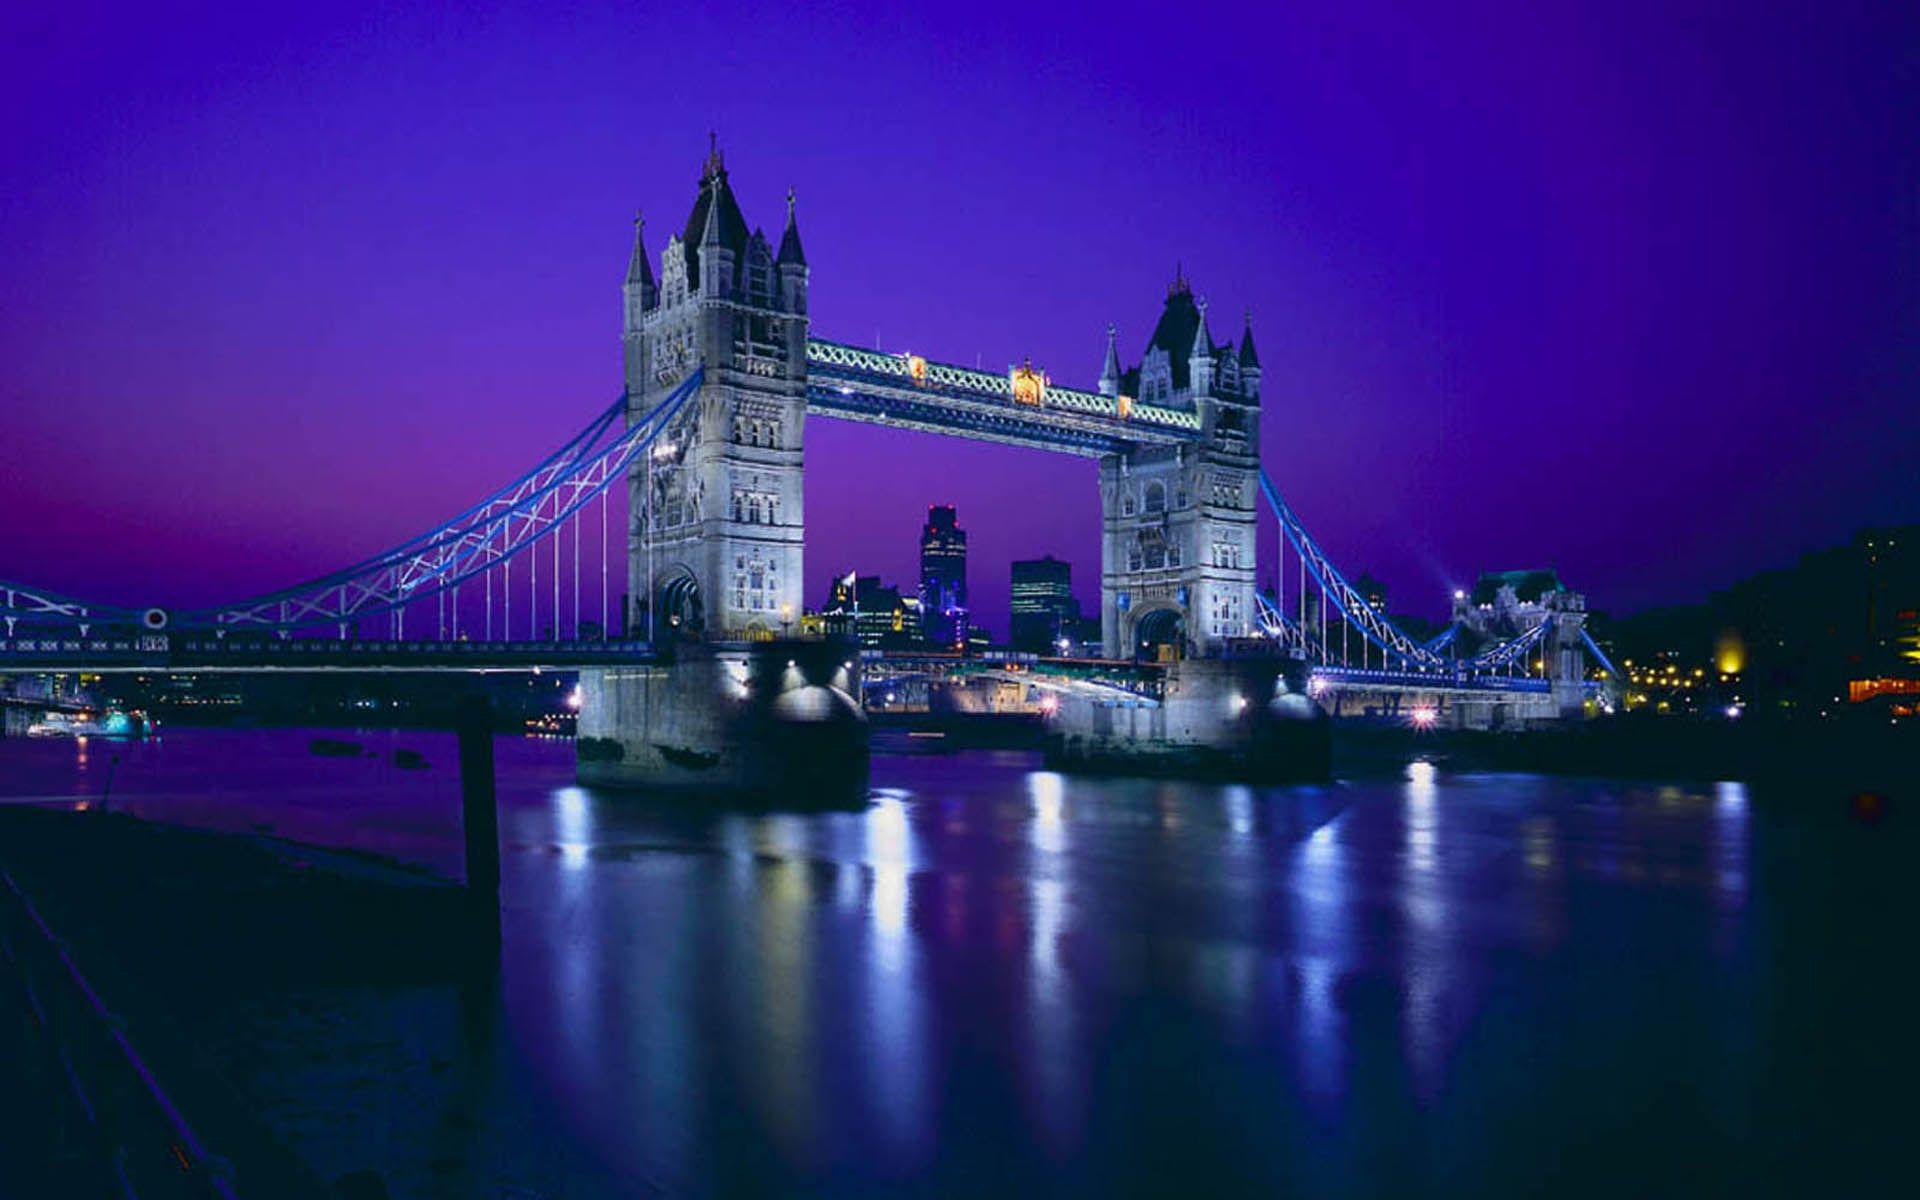 London Bridge 1920x1200 Wallpaper London Bridge 1920x1200 Wallpaper